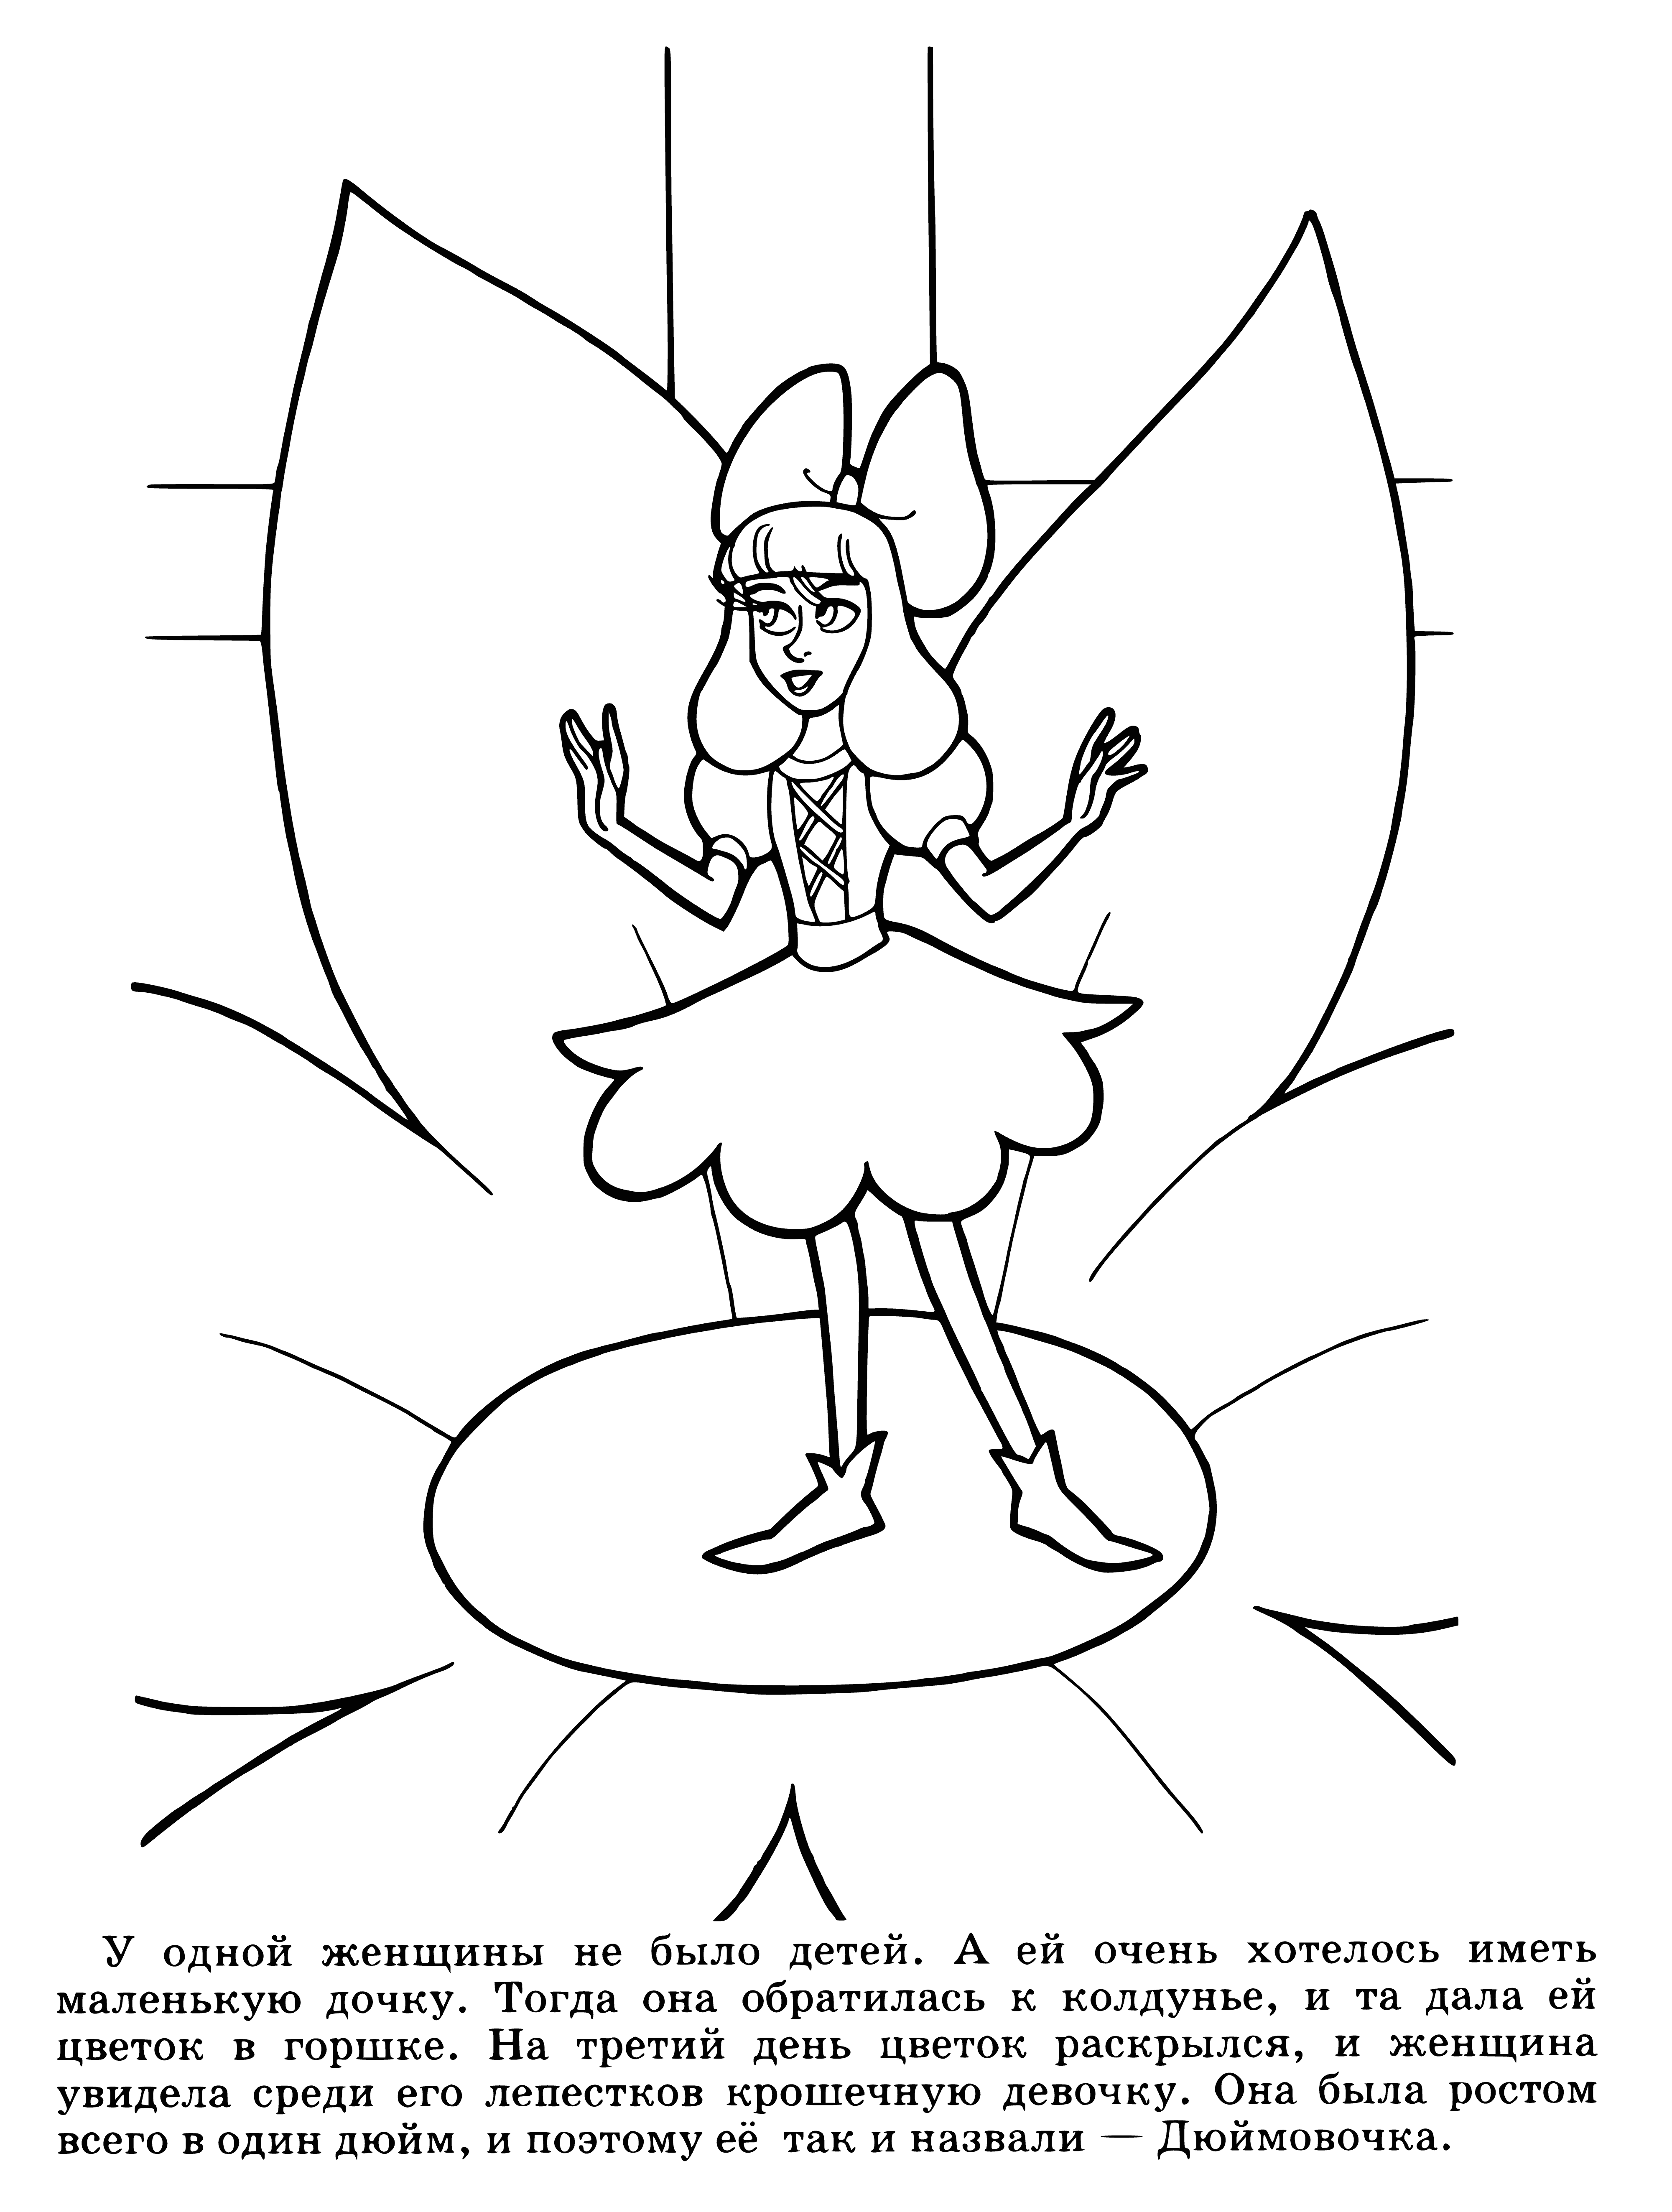 Thumbelina boyama sayfası